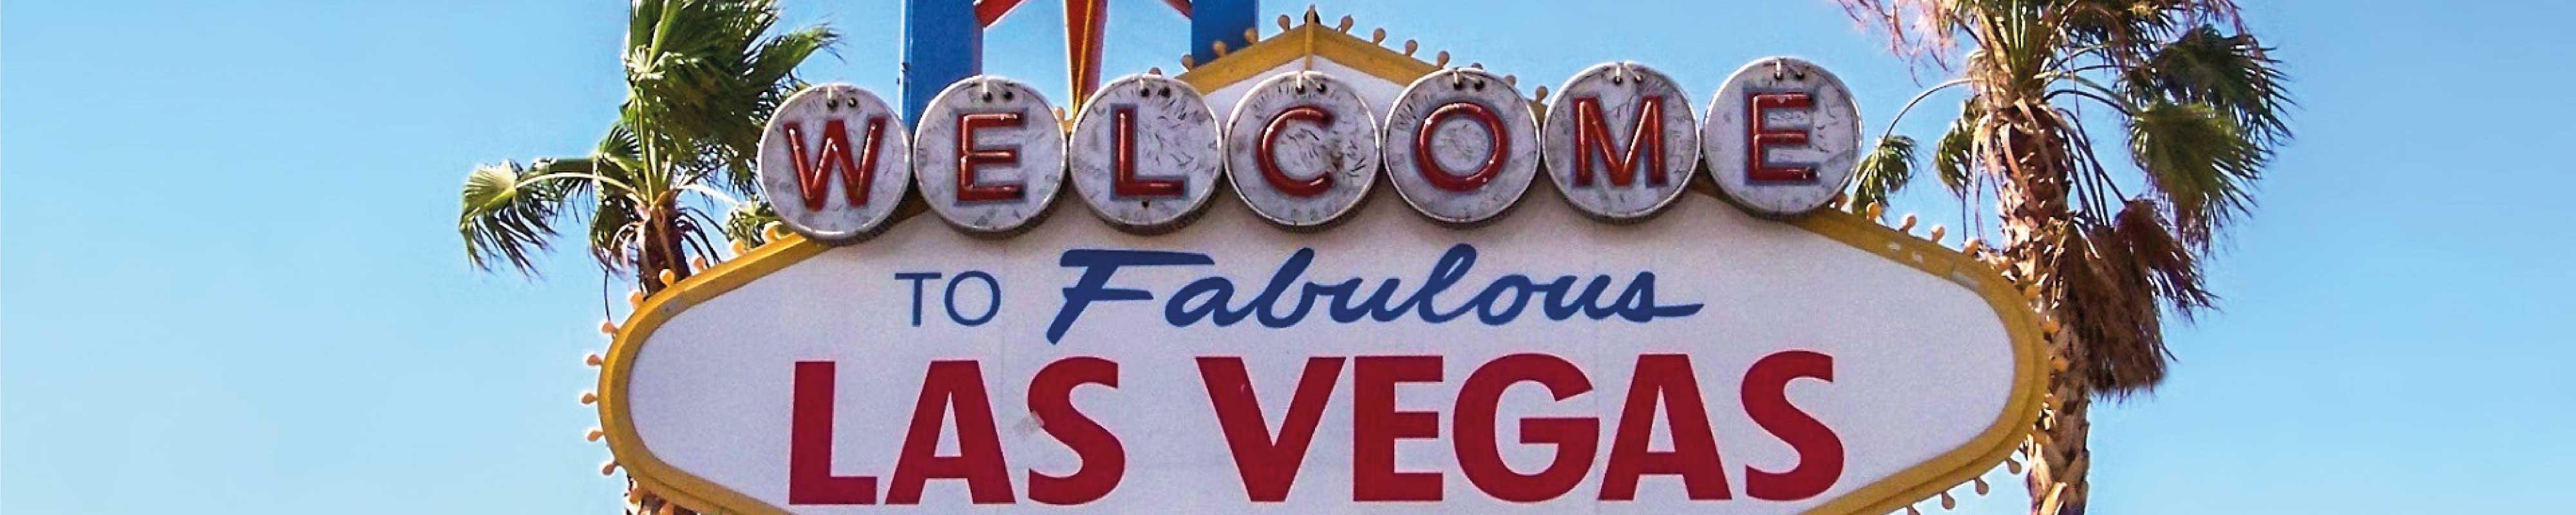 Depósito de Bagagem | Flamingo Las Vegas em Las Vegas - Nannybag